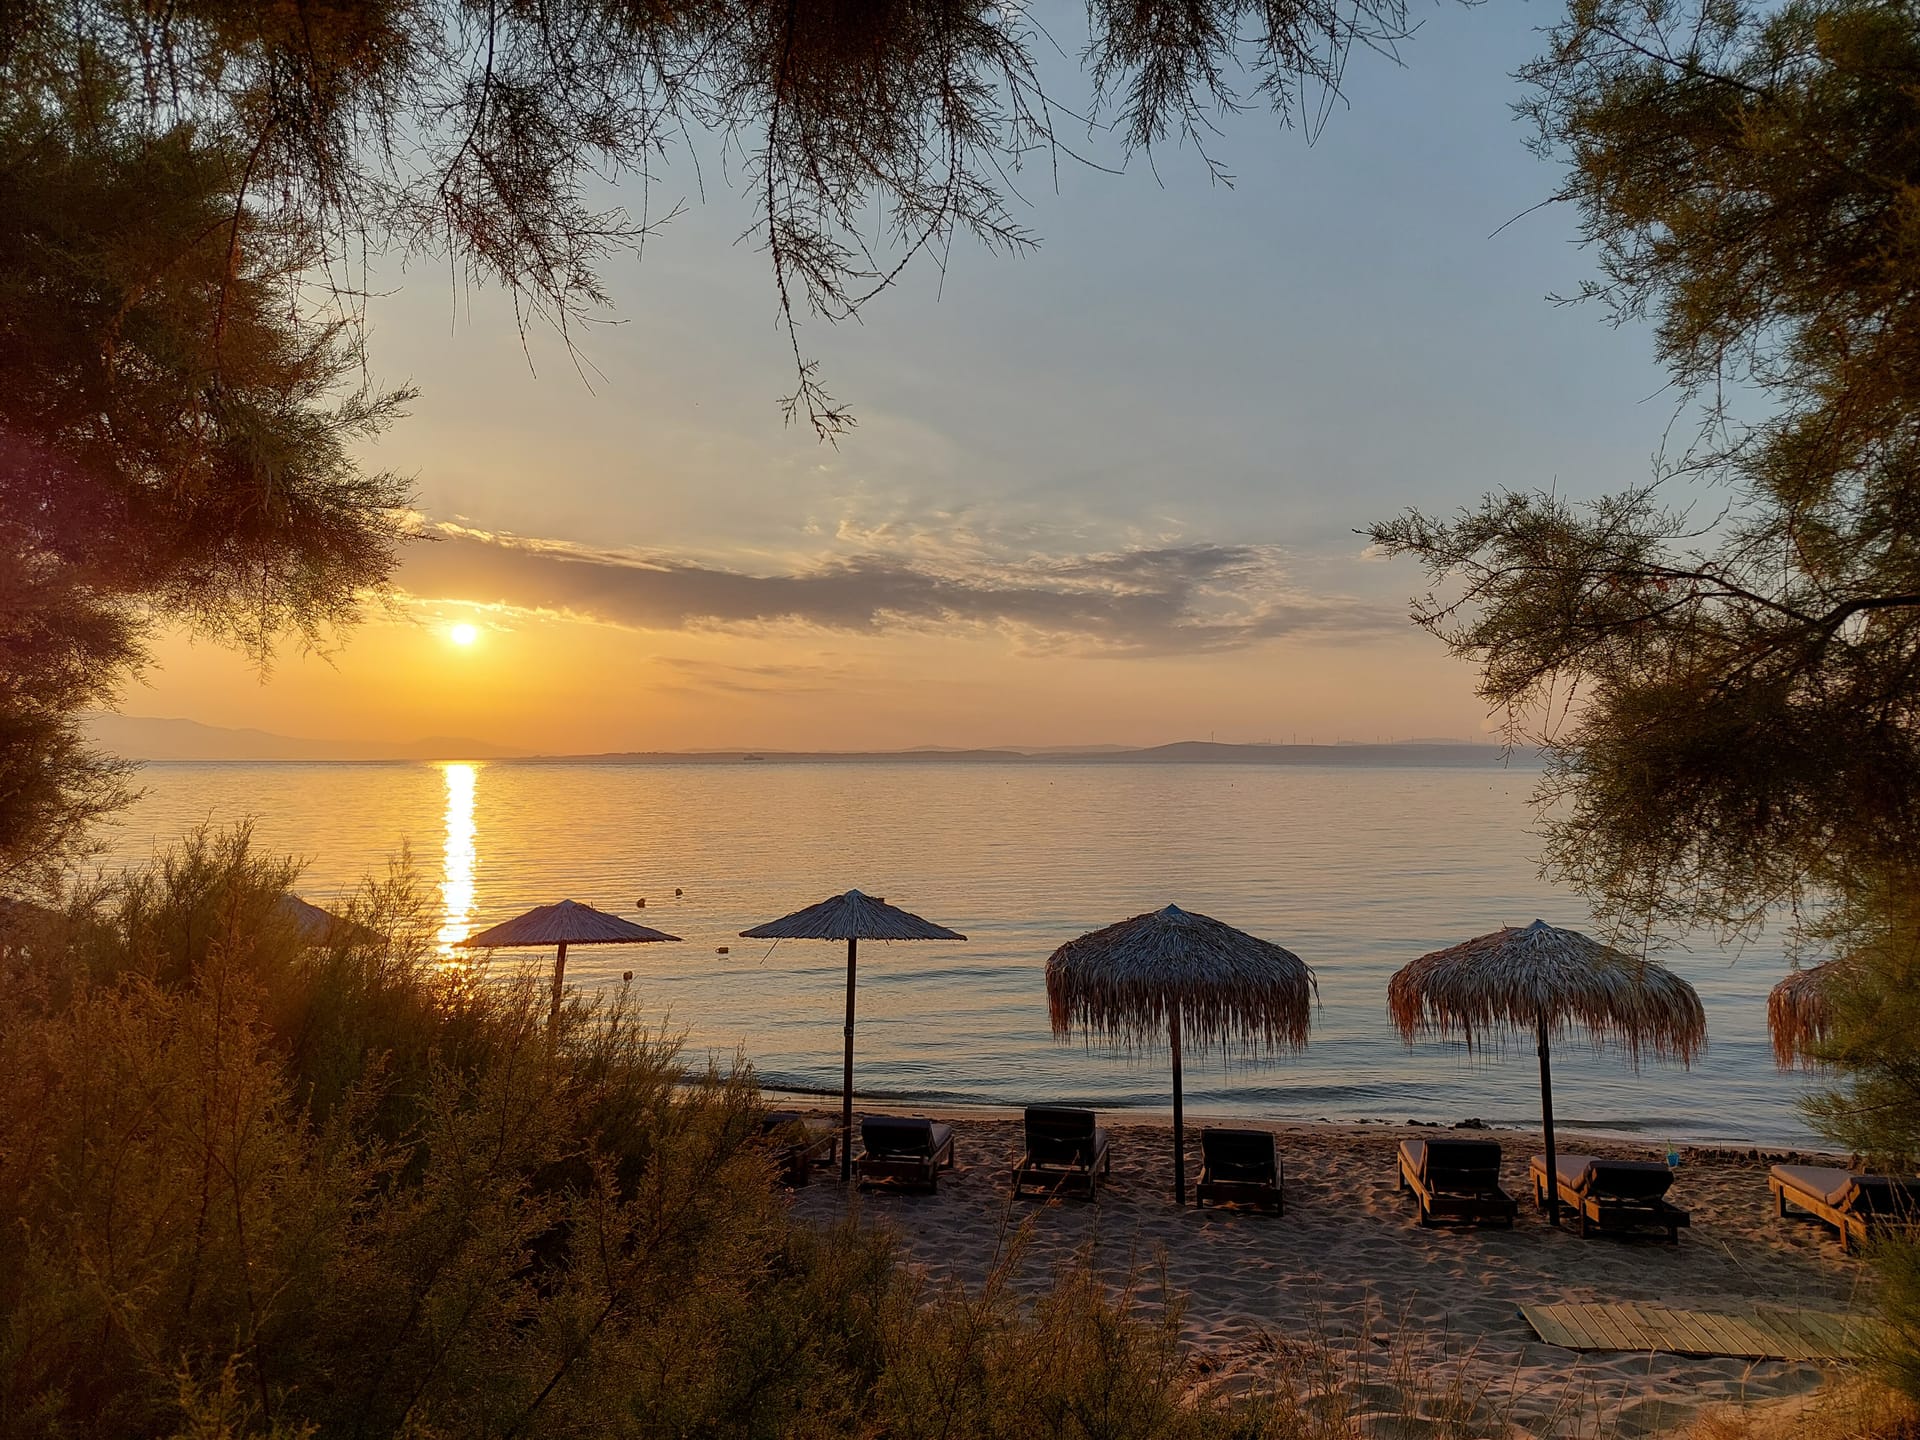 Chios Shallow Sea – Πλάκα, Χίος Πλάκα,Χίος για 2 Μέρες / 1 Νύχτα για 2 άτομα